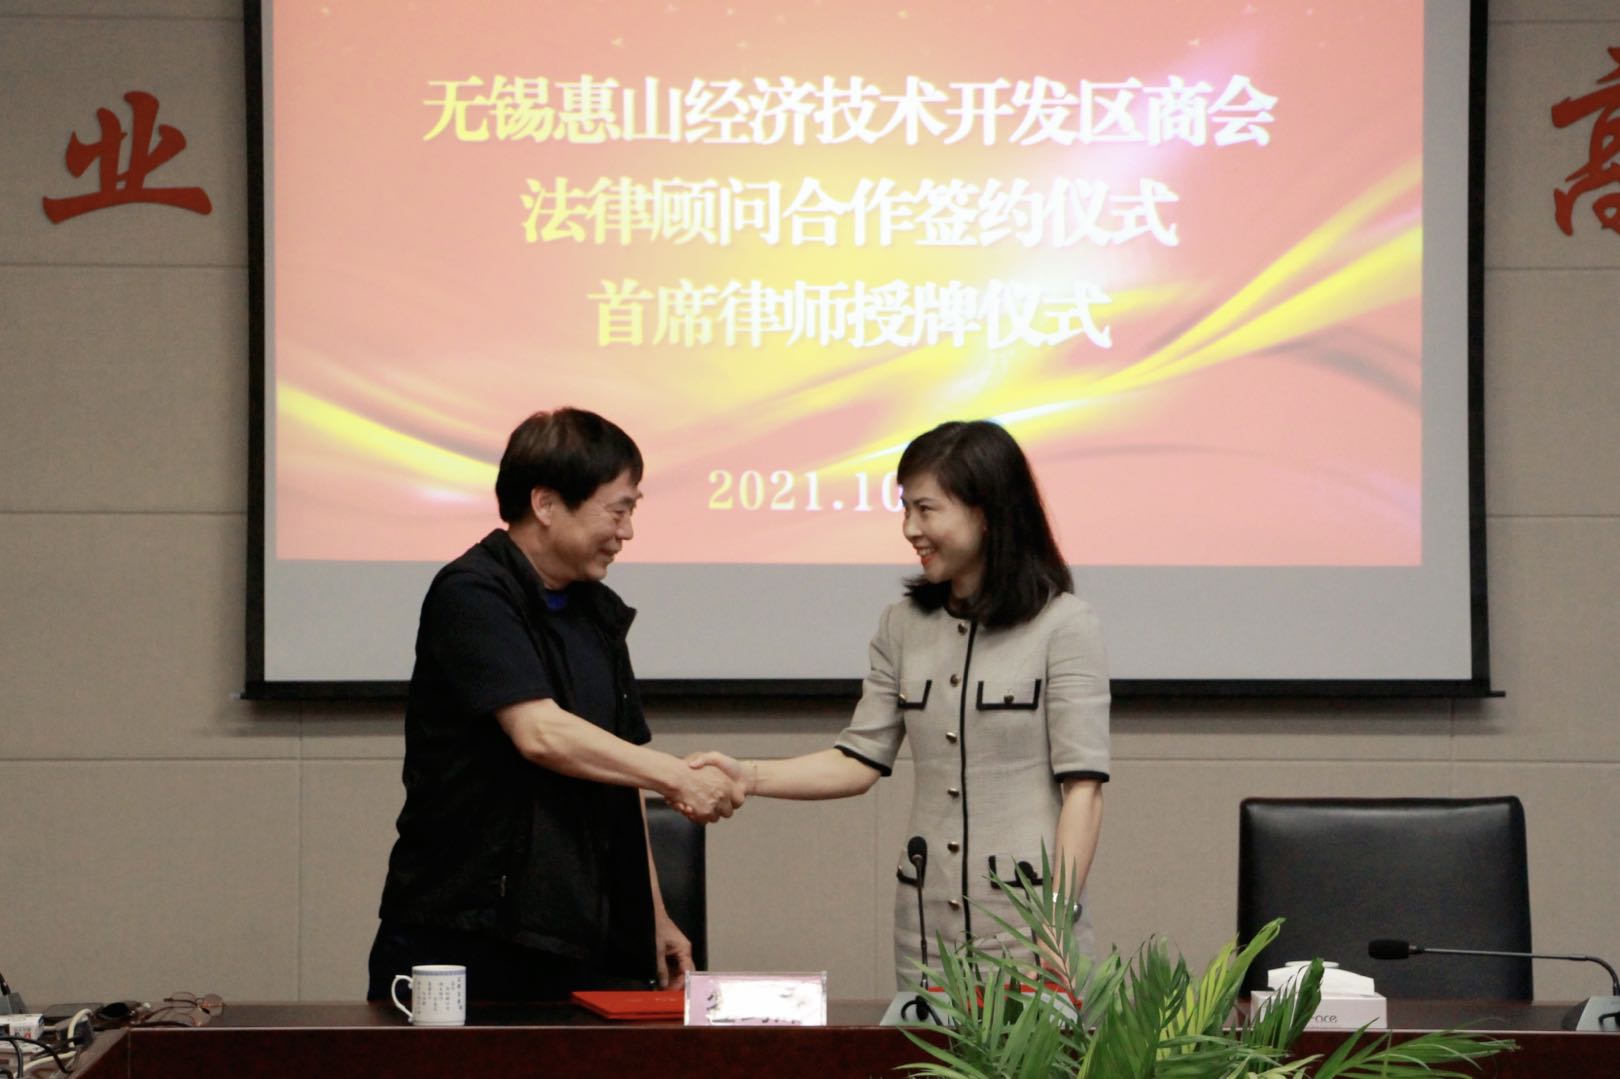 江苏元聚律师事务所与无锡惠山经济技术开发区商会签订法律顾问服务合作协议